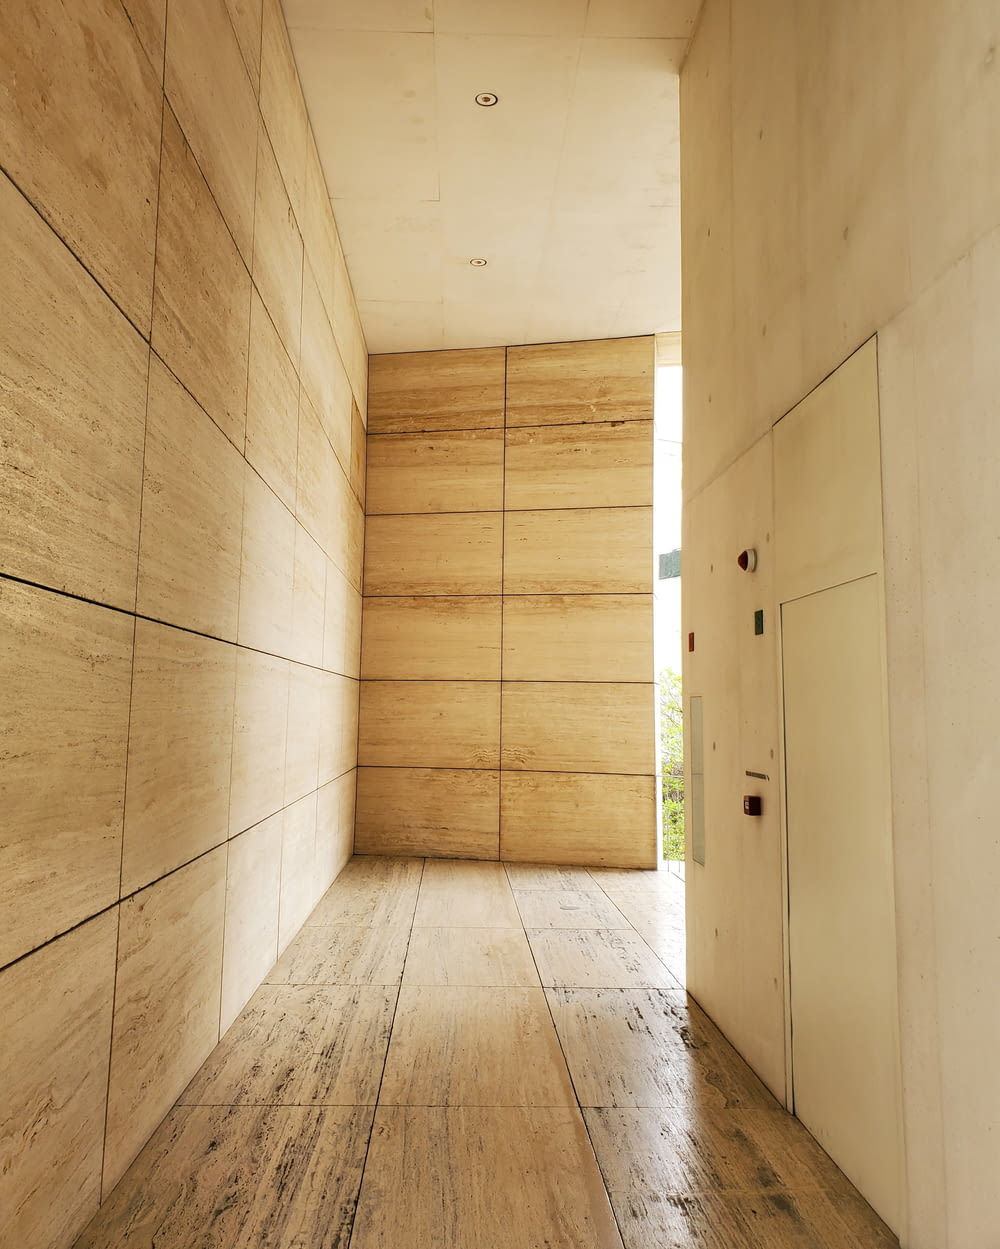 brown wooden parquet floor with white wooden doors